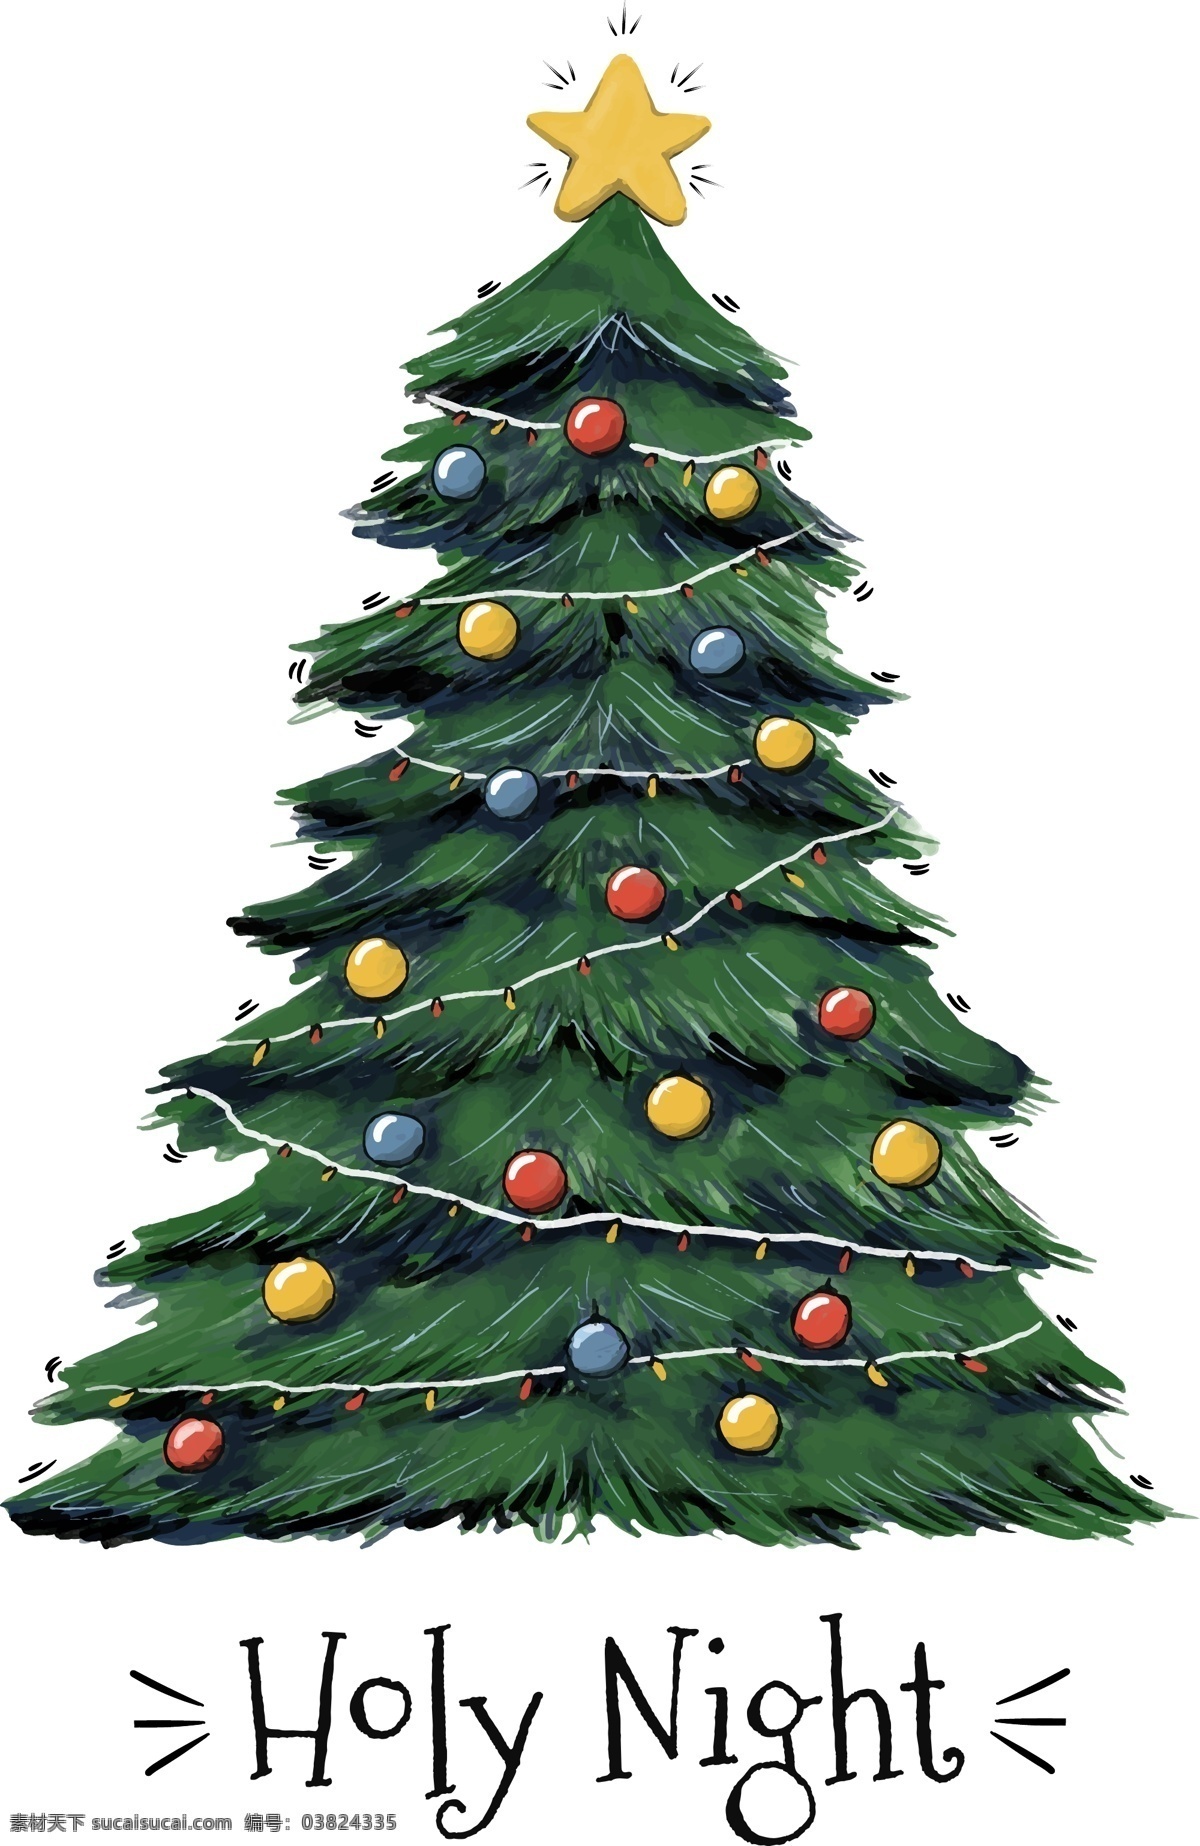 节日素材 圣诞节 圣诞树 矢量素材 手绘 手绘插画 手绘圣诞树 树木 矢量